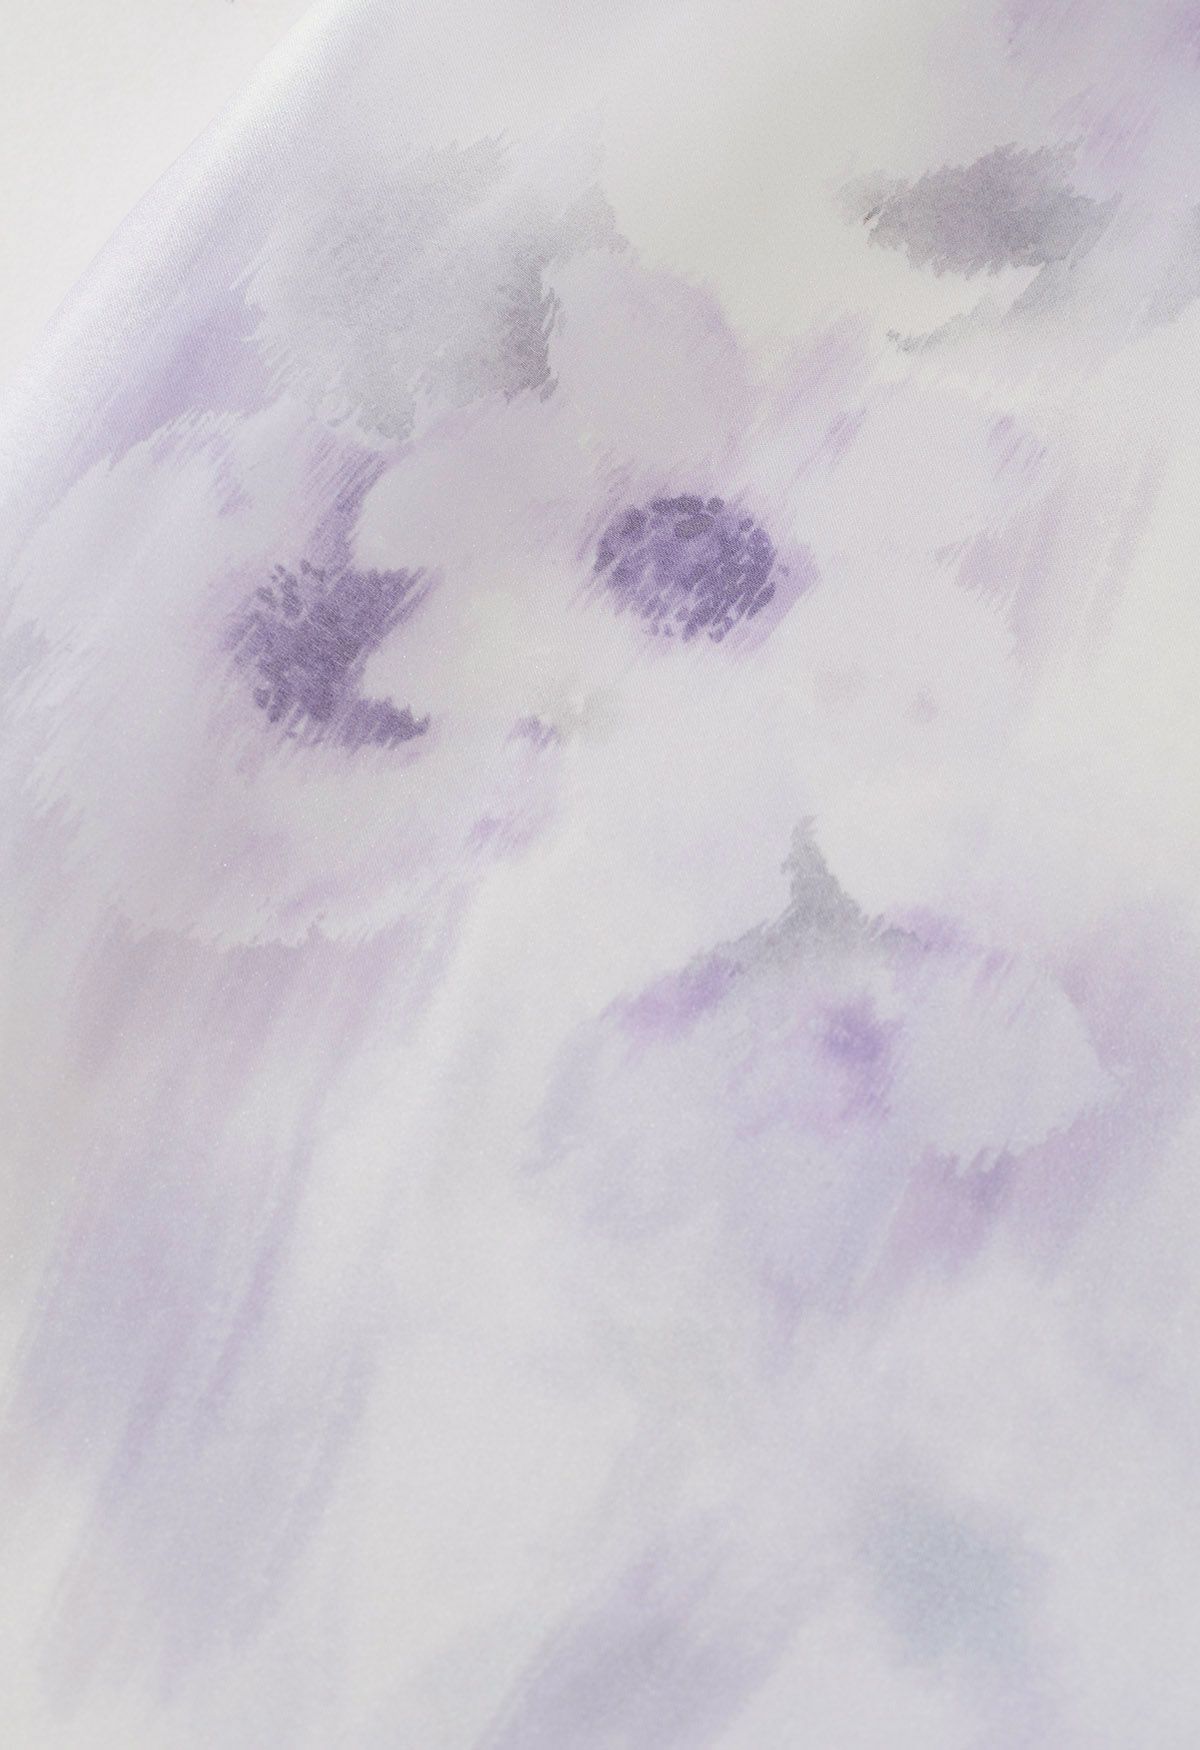 ألوان مائية الزهور بونوت قميص شفاف في لافندر